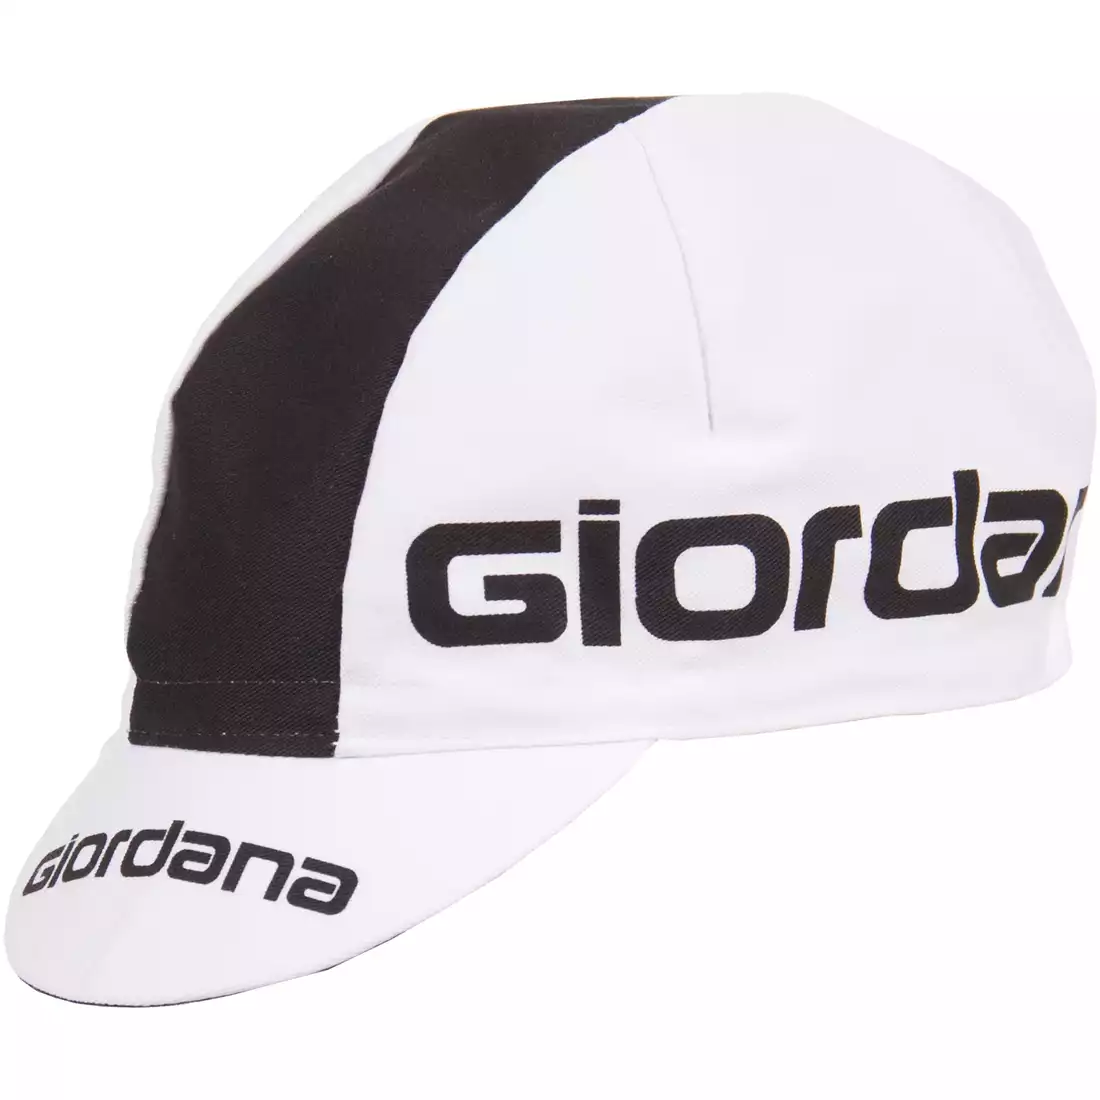 GIORDANA SS18 czapeczka kolarska - Giordana Logo - White/Black GI-S5-COCA-GIOR-WTBK one size